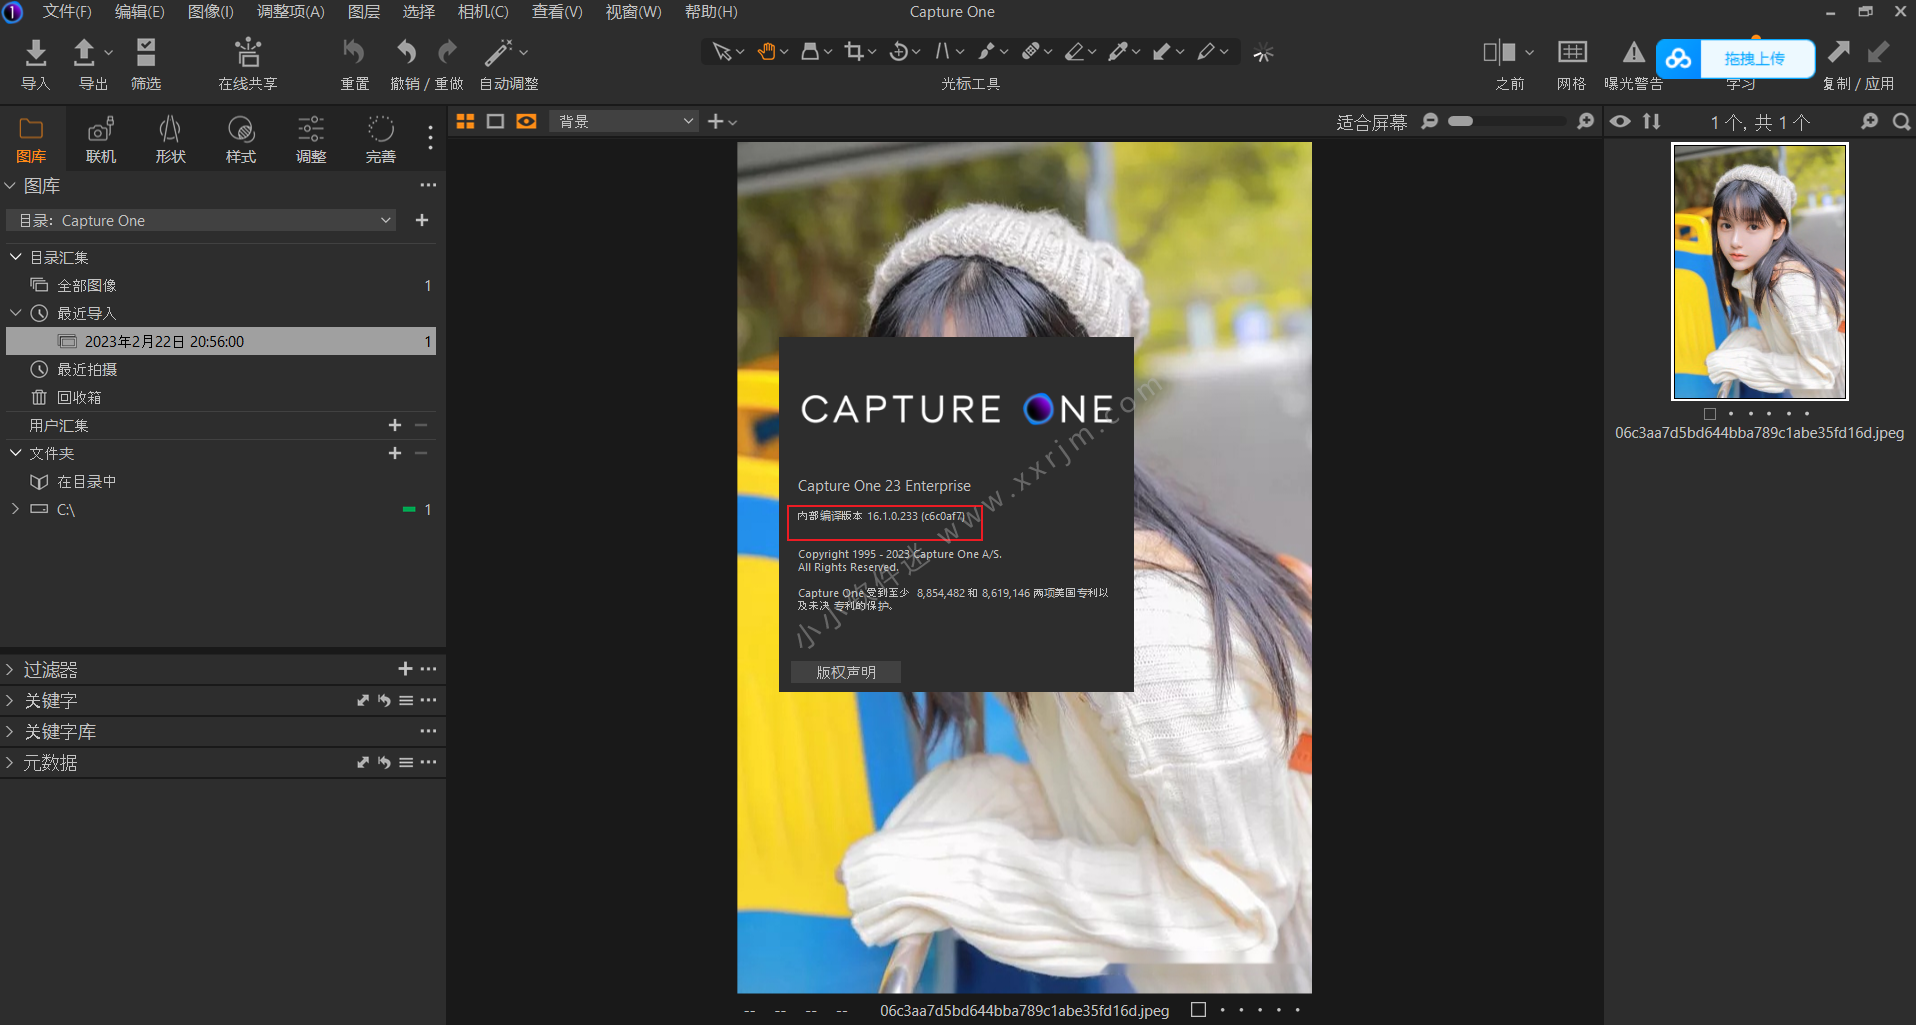 飞思Capture One 23 v16.1.0.233中文破解版-图像编辑处理软件